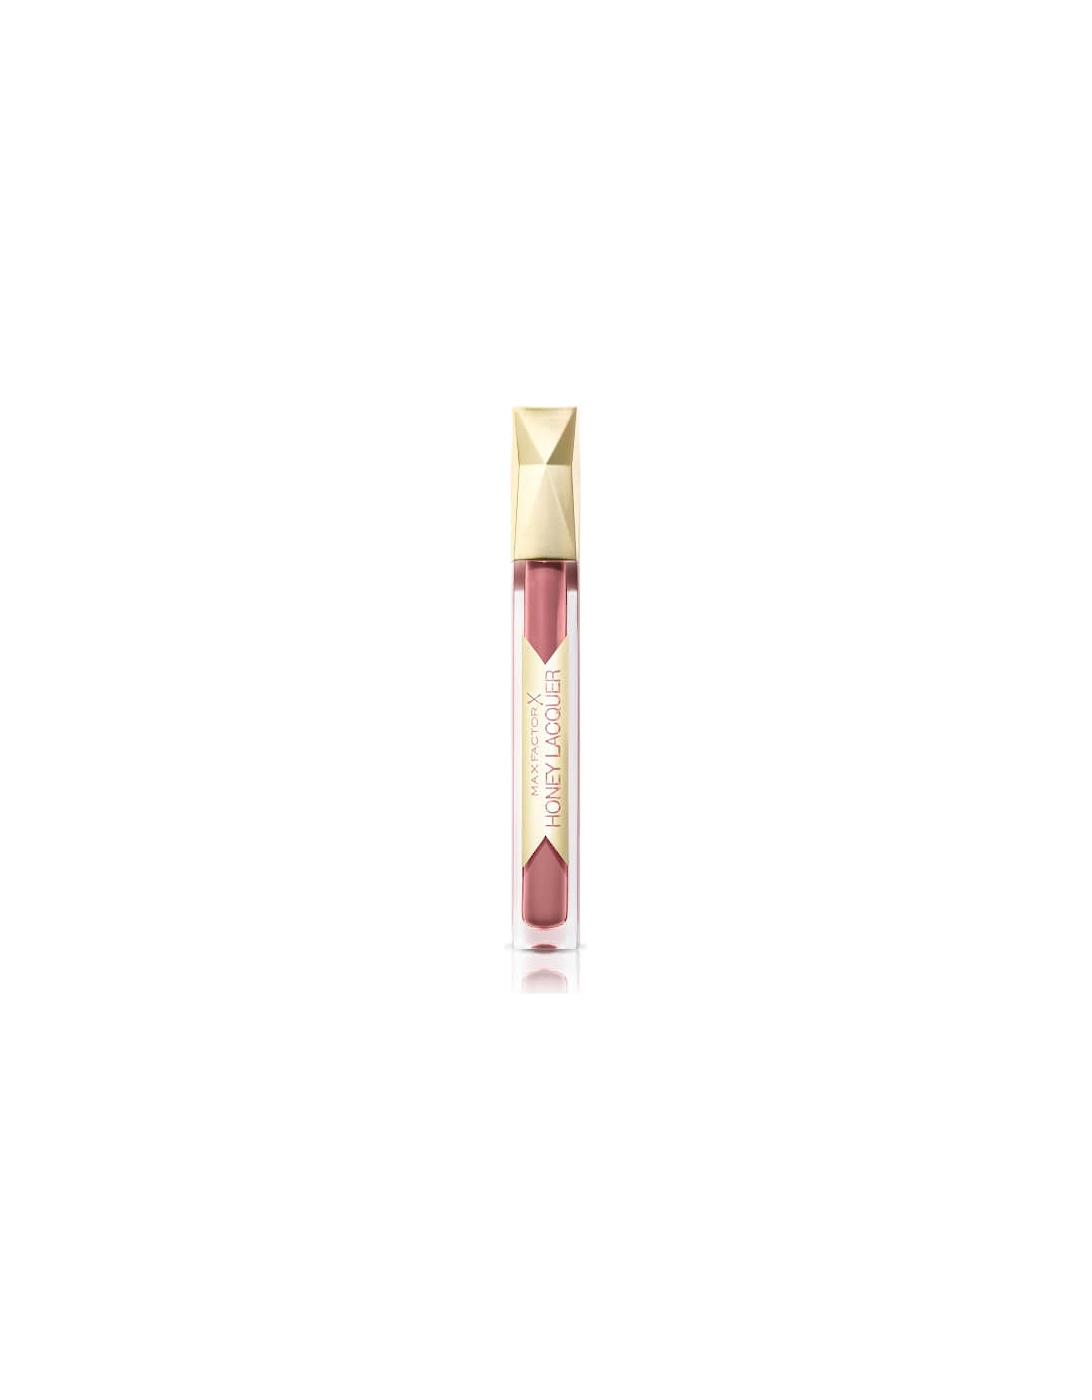 Colour Elixir Honey Lacquer Lip Gloss 3.8ml - 05 Honey Nude - Max Factor, 2 of 1